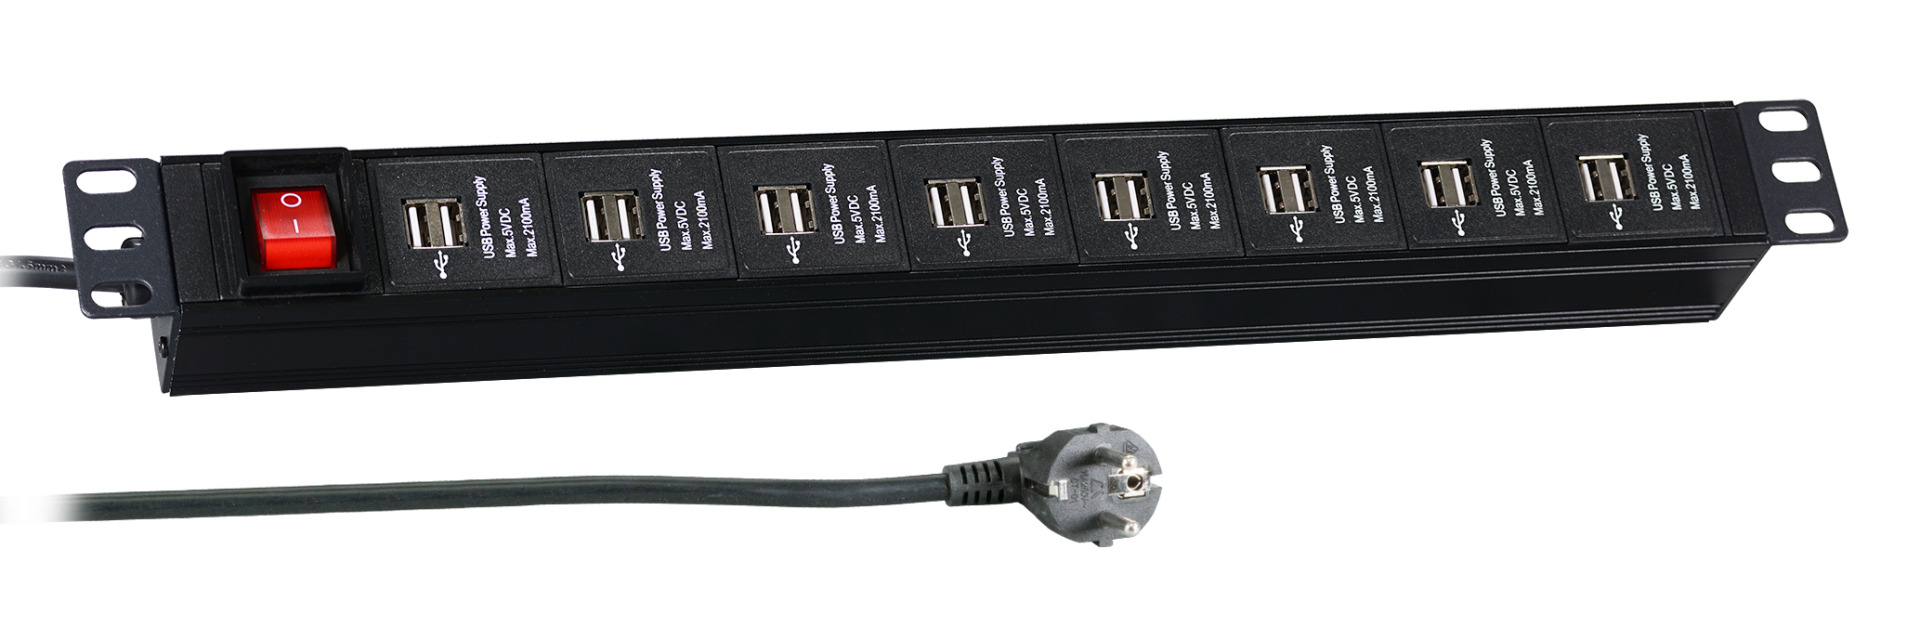 19“ 1U Socket Strip 16 x USB with Switch, Black